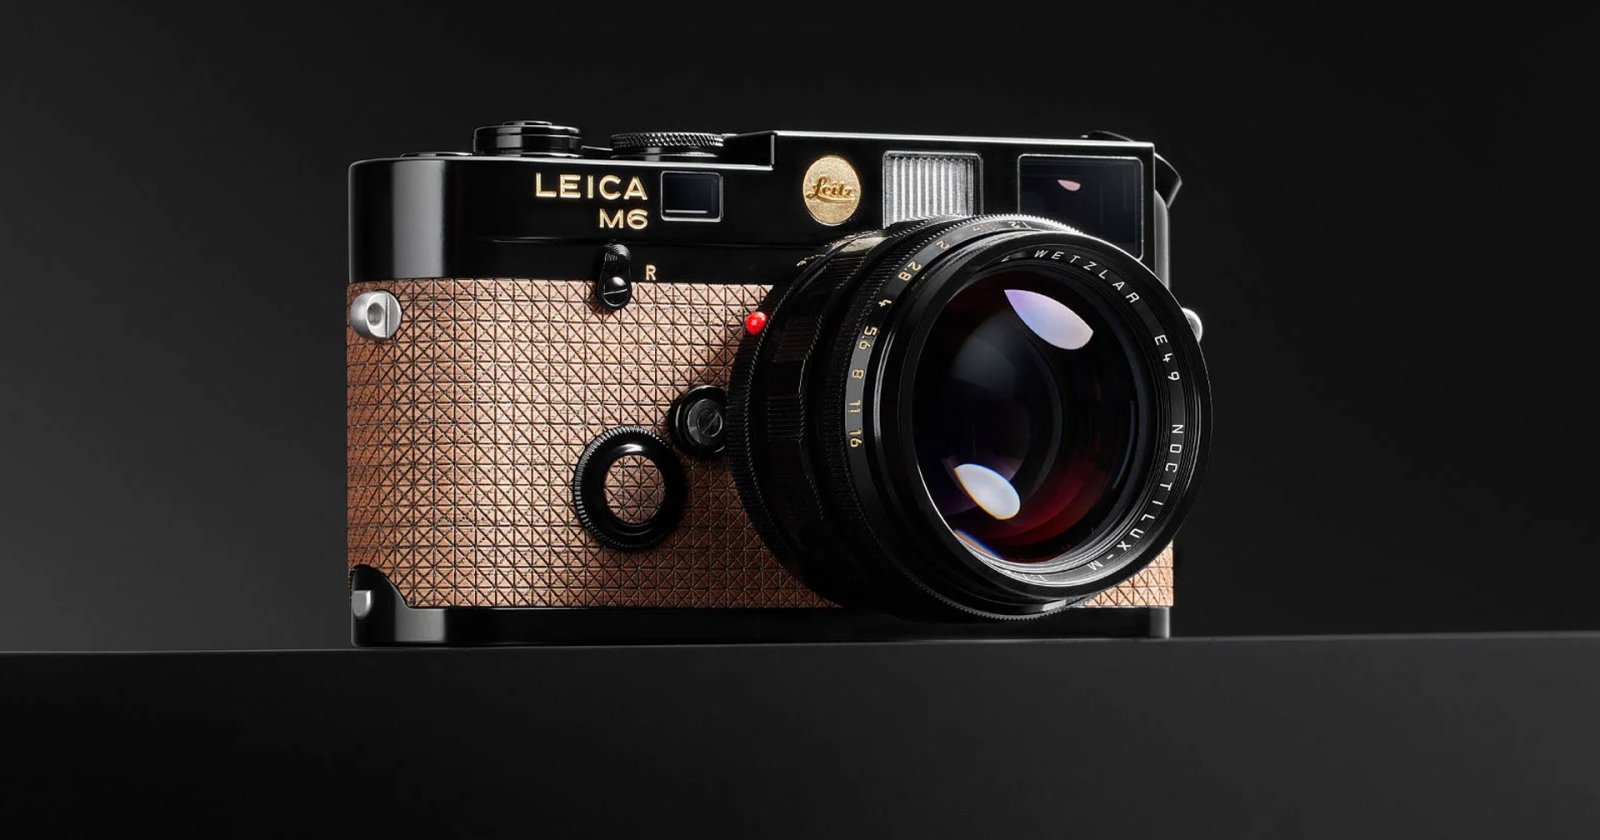 เปิดตัว Leica M6 รุ่นพิเศษฉลองครบรอบ 20 ปี งานประมูล Leitz Auction ราคาแตะหลักล้าน!